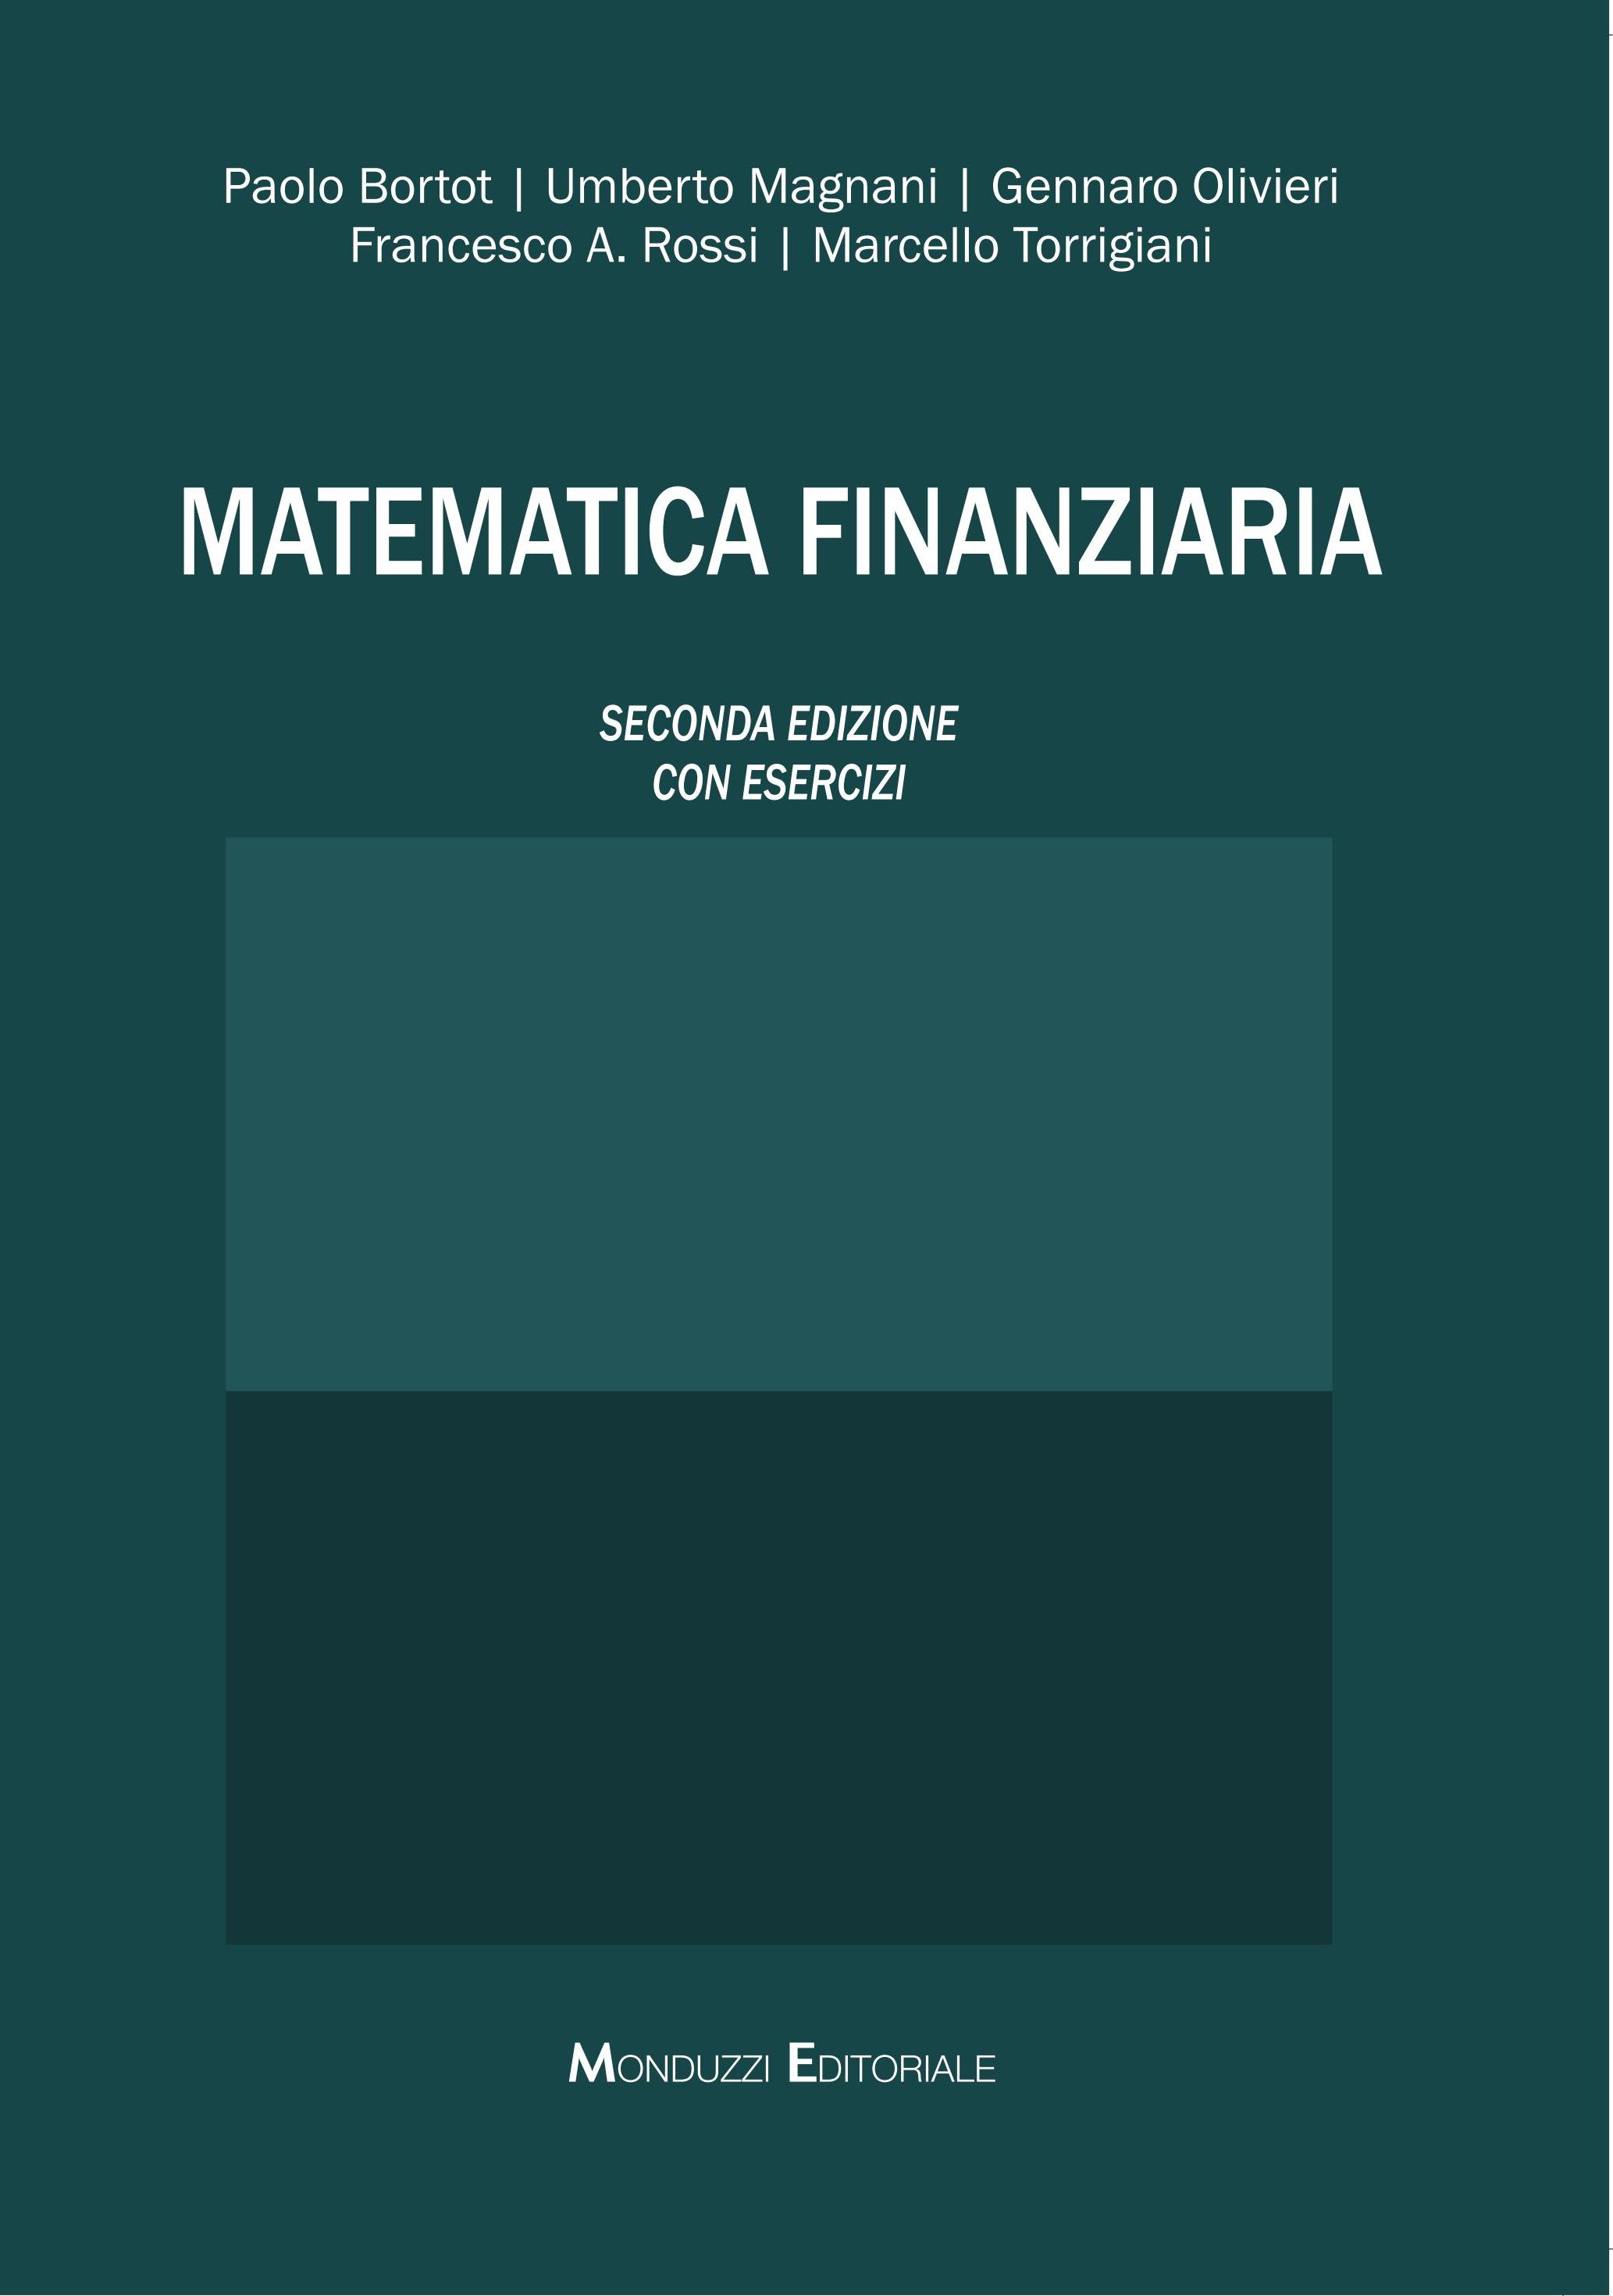 MEC003MATFIN - matematica finanziaria